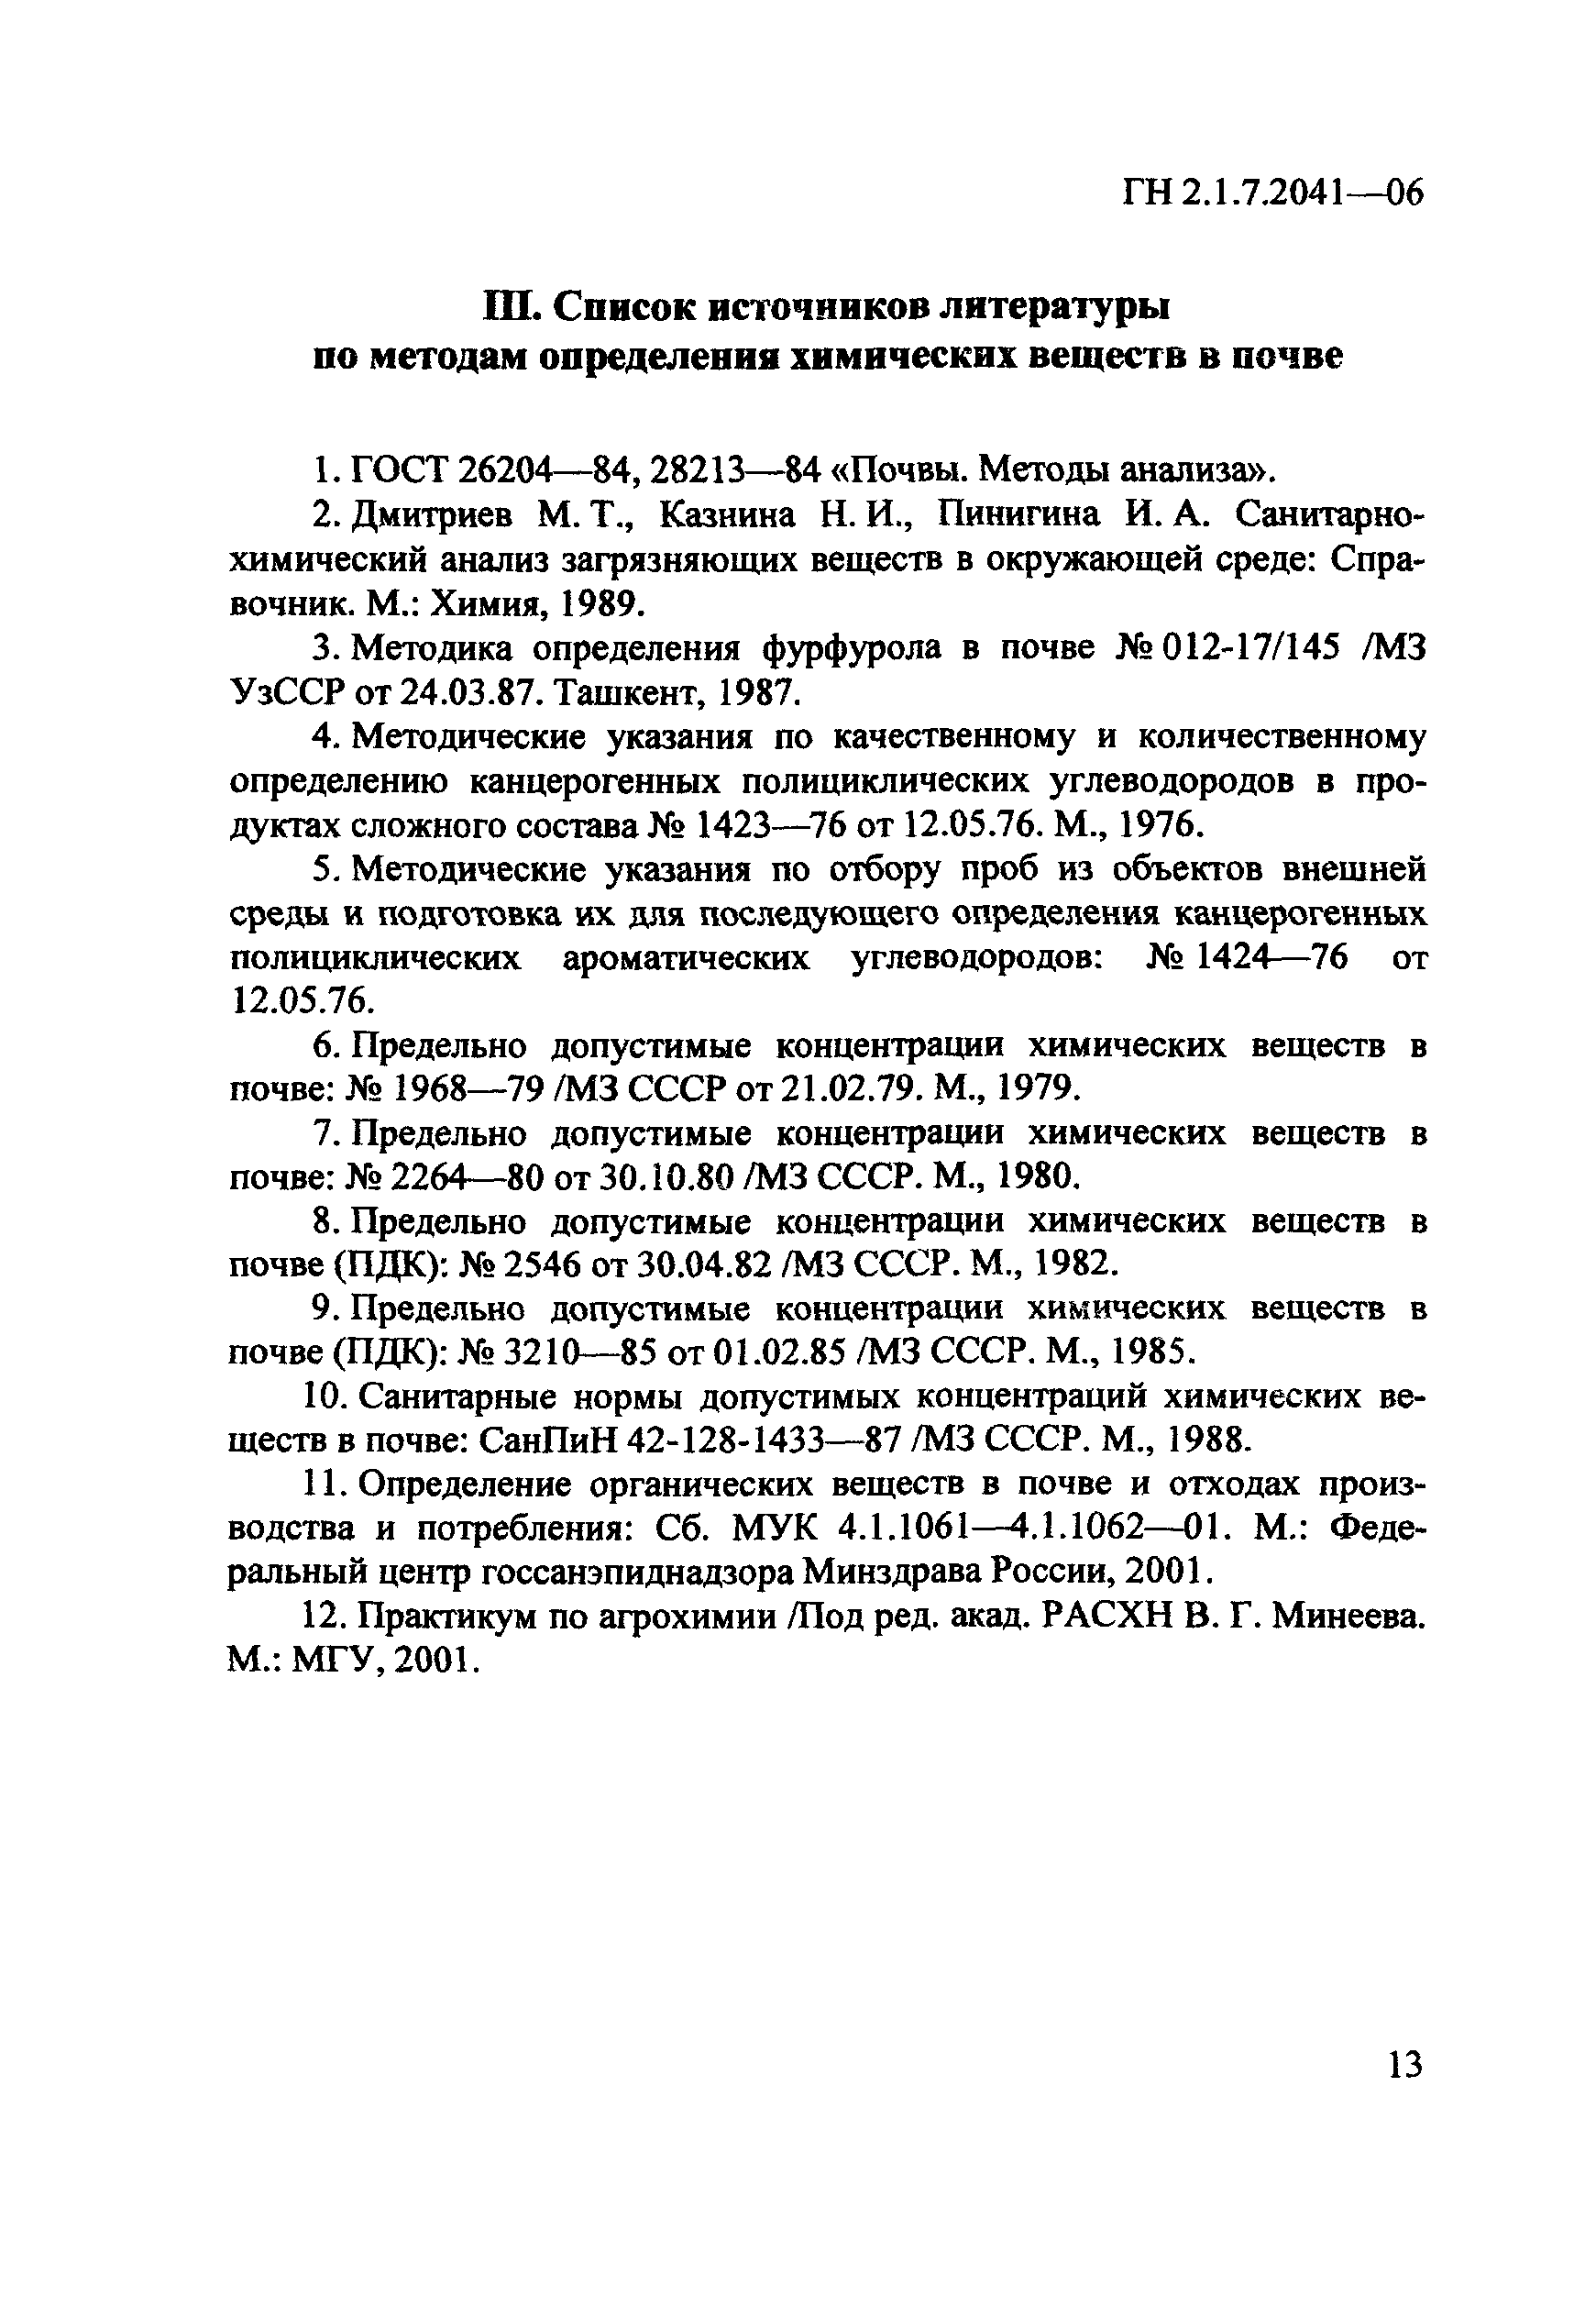 ГН 2.1.7.2041-06